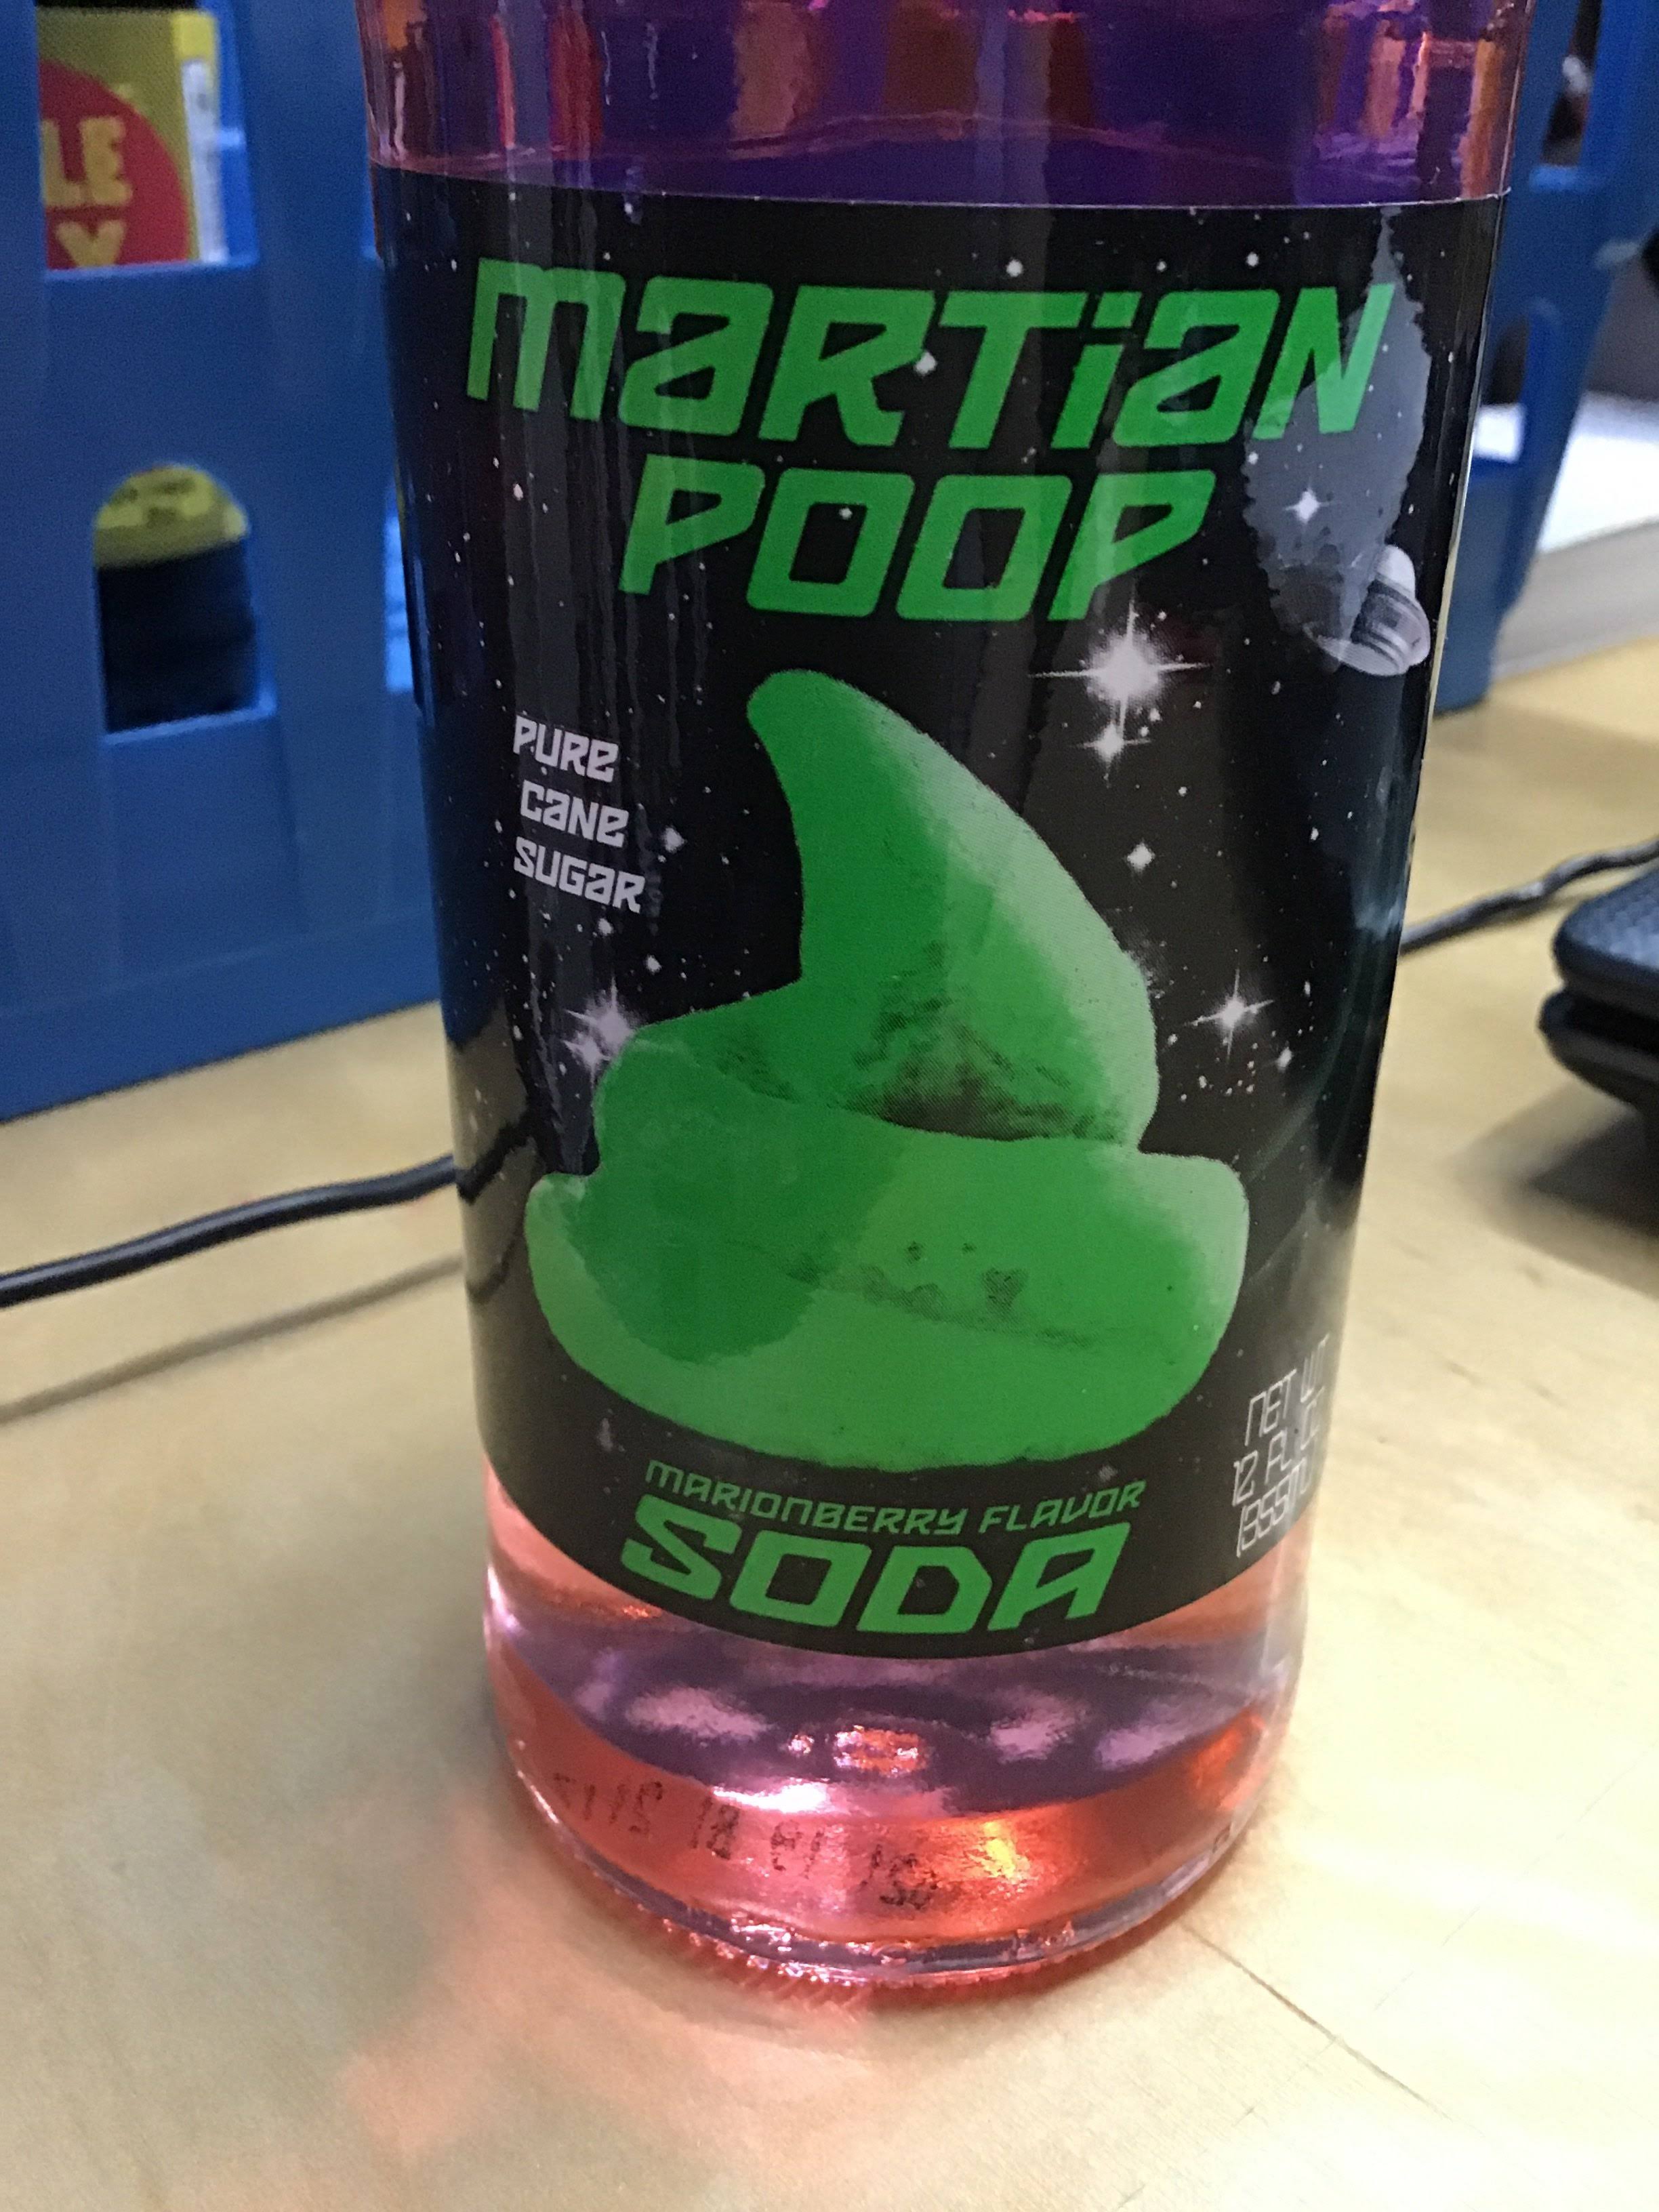 Martian poop